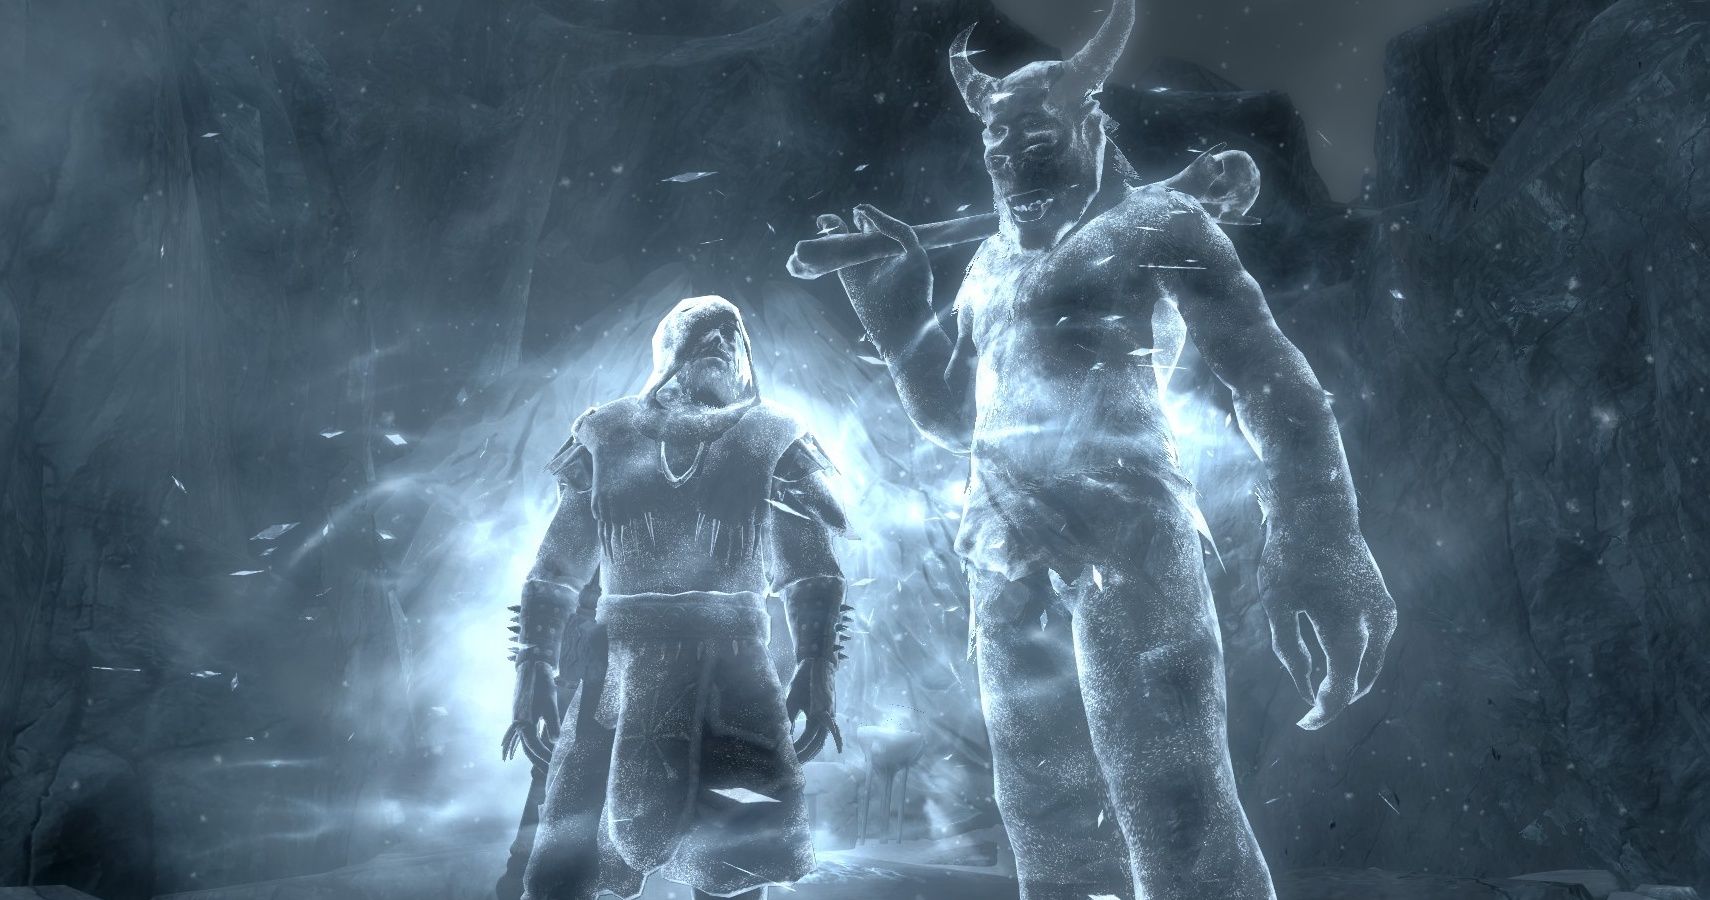 Karstaag, Unmarked missions - The Elder Scrolls V: Skyrim - Dragonborn  Game Guide